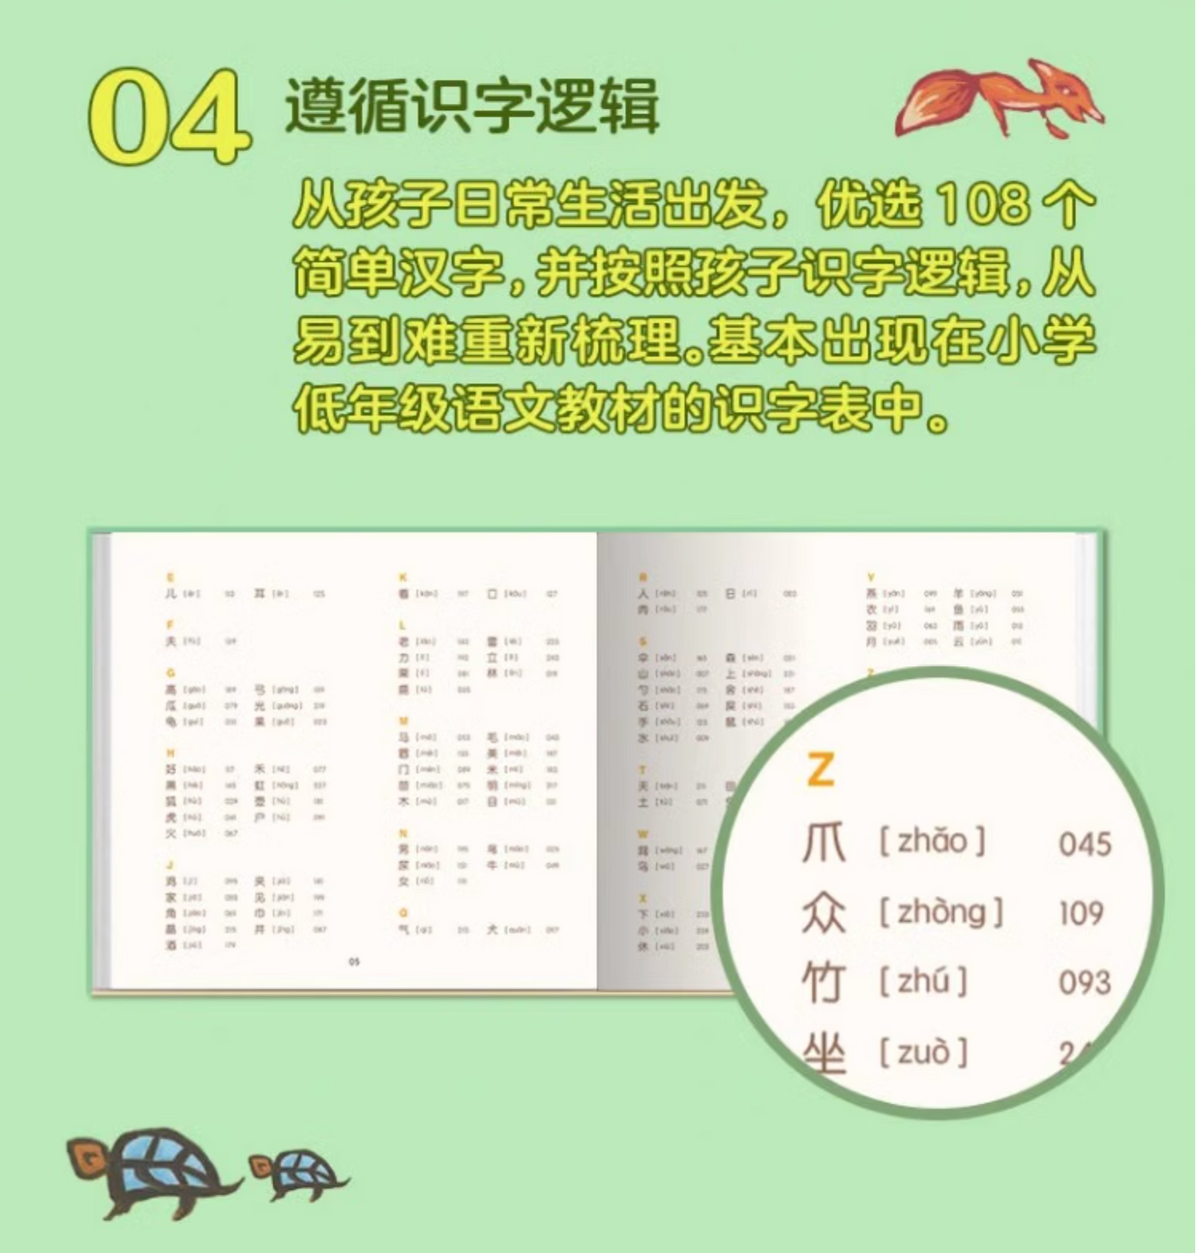 汉字是画出来的（升级版）：小象甲骨文汉字系列